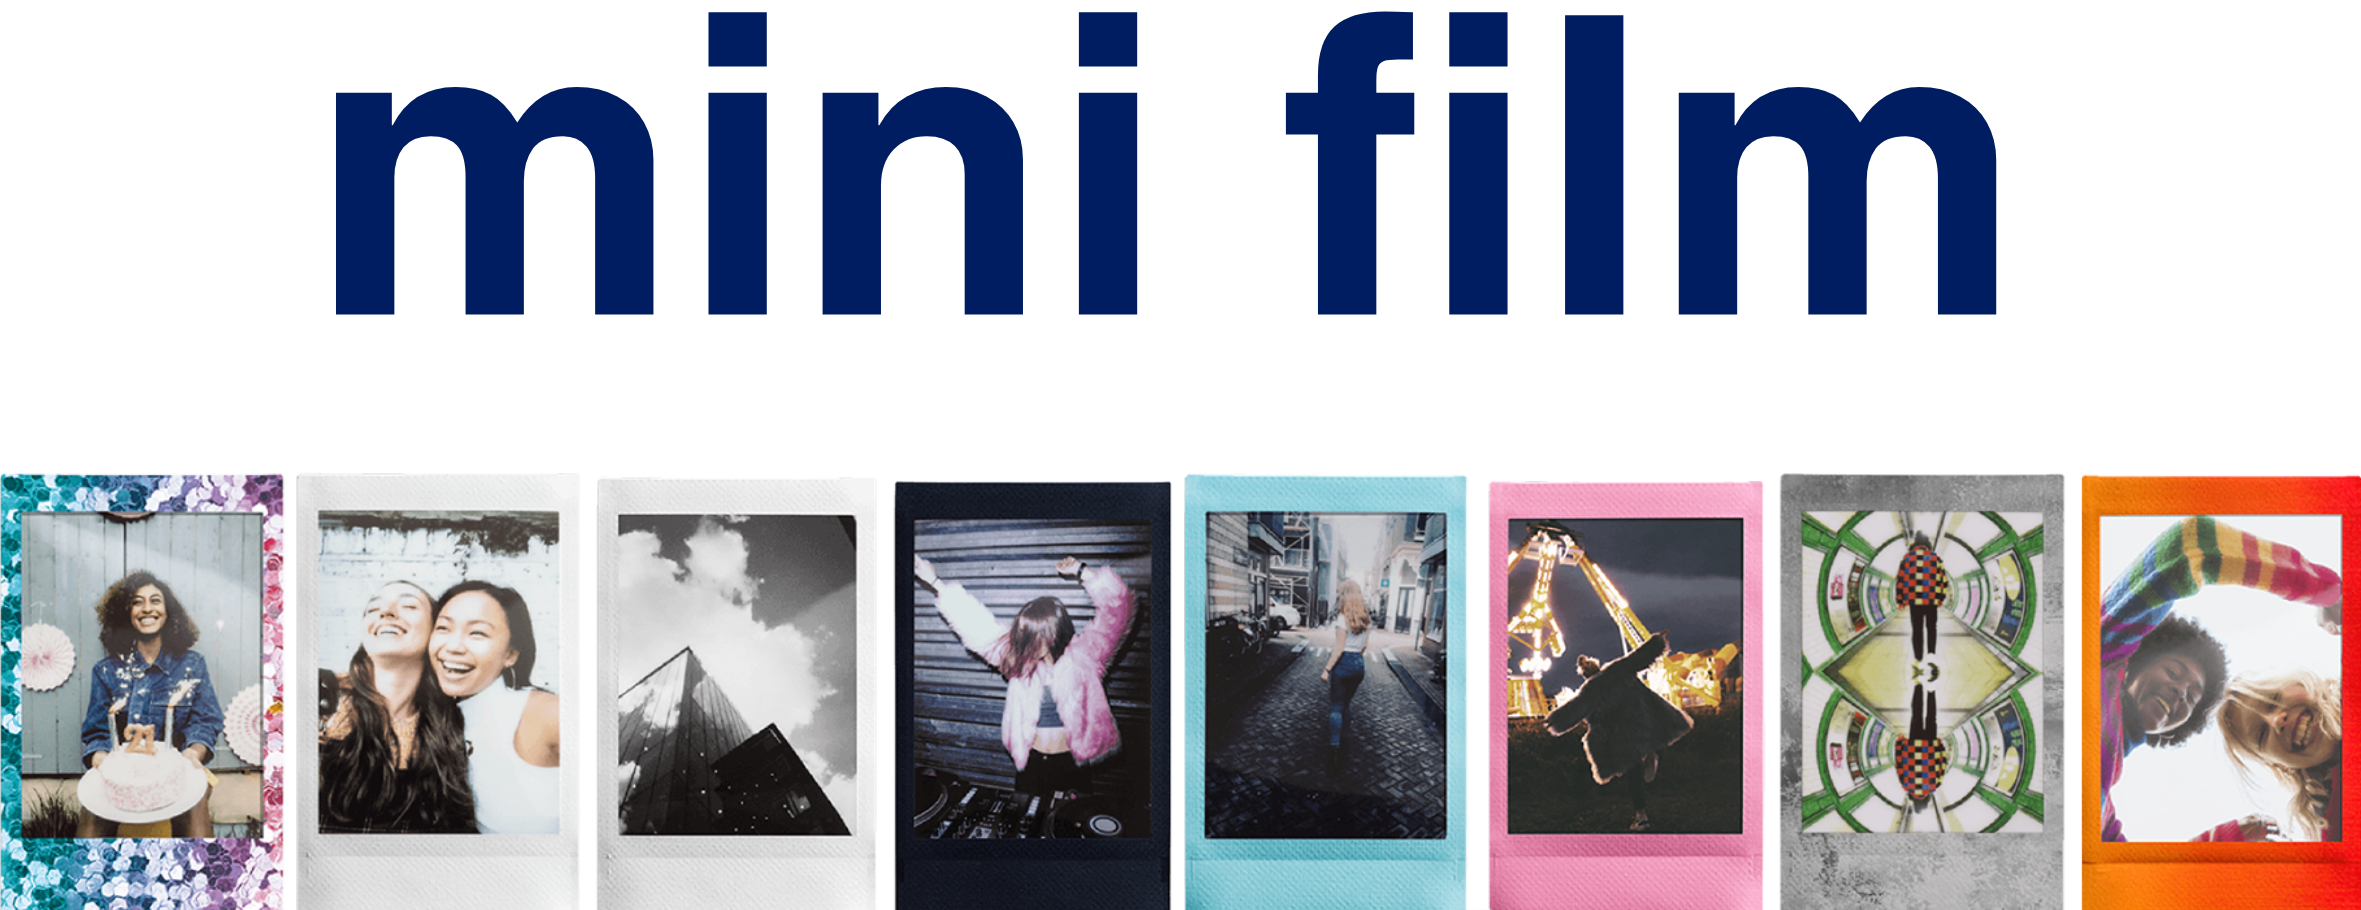 Pelicula Fujifilm Instax Mini Mermaid Tail x10